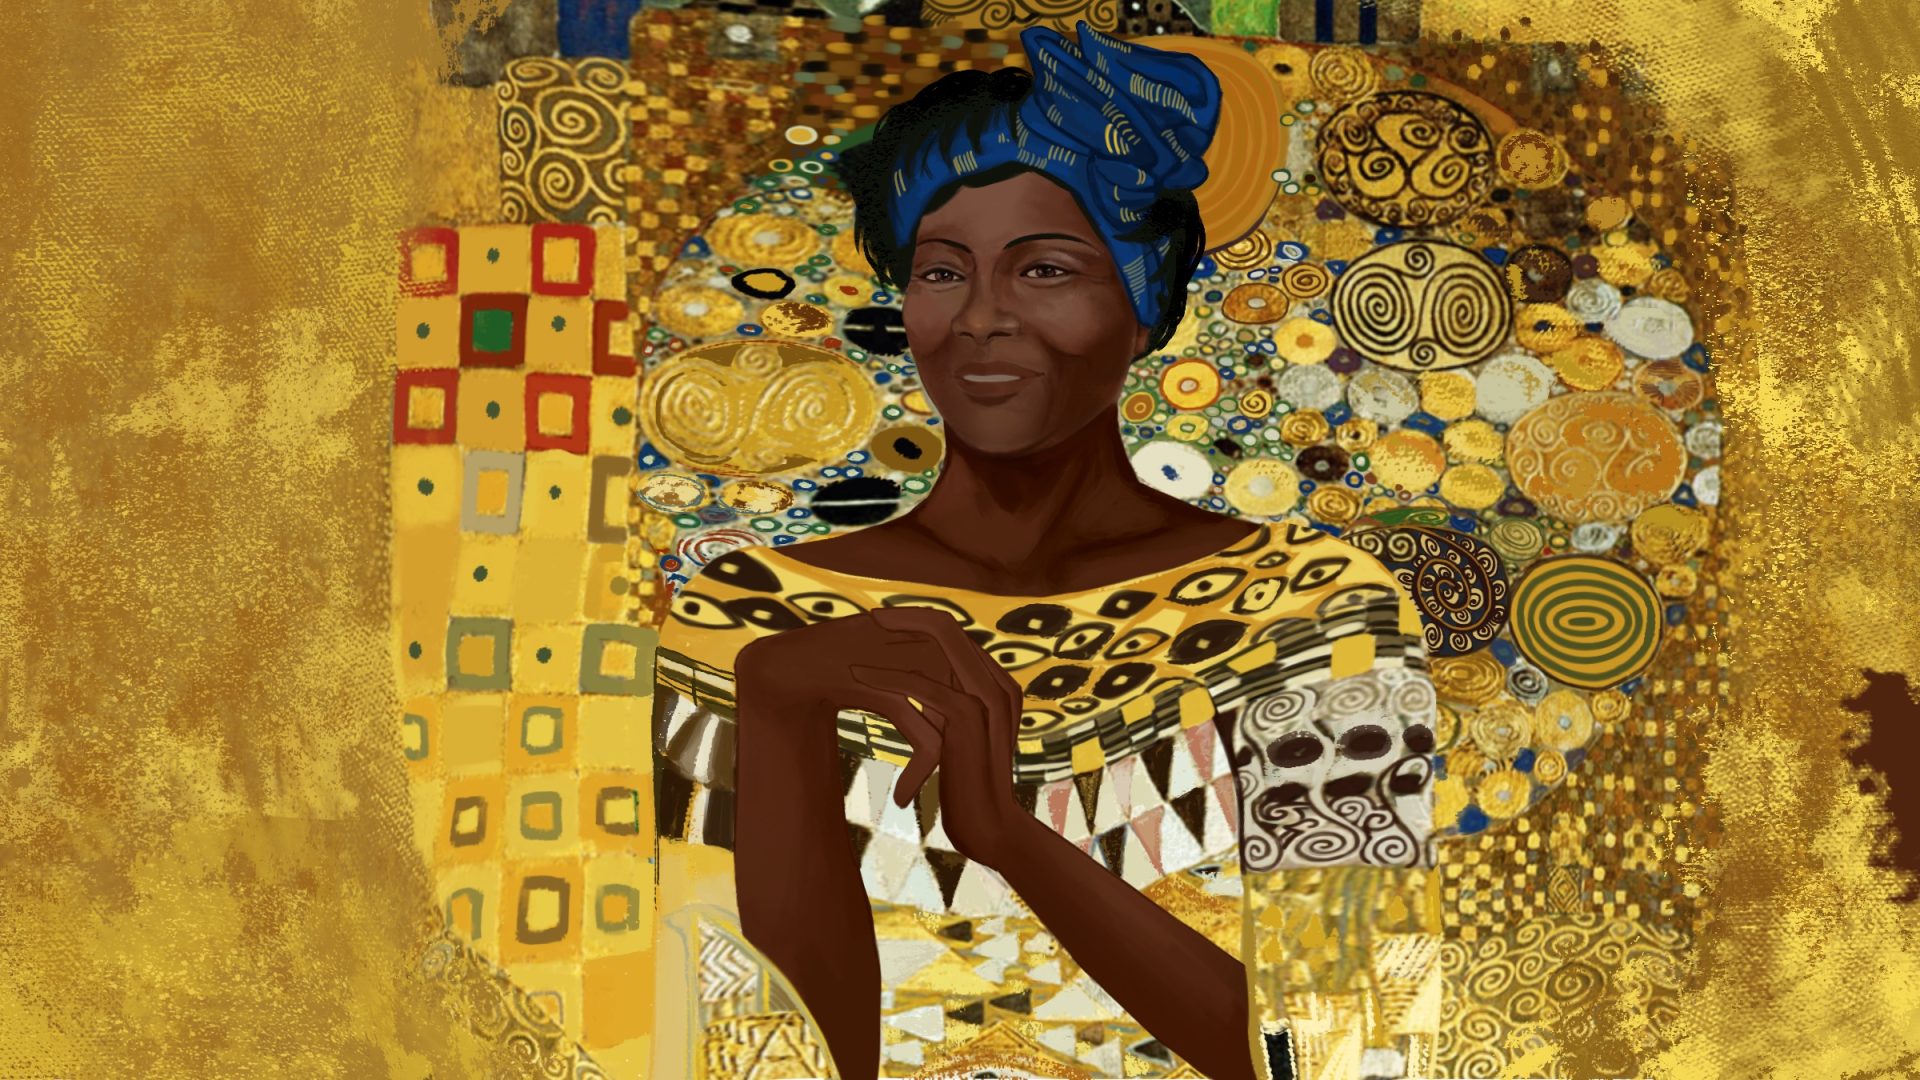 Retrato de Wangari Maathia al estilo de “Adele Bloch-Bauer I” del pintor austriaco Gustav Klimt.